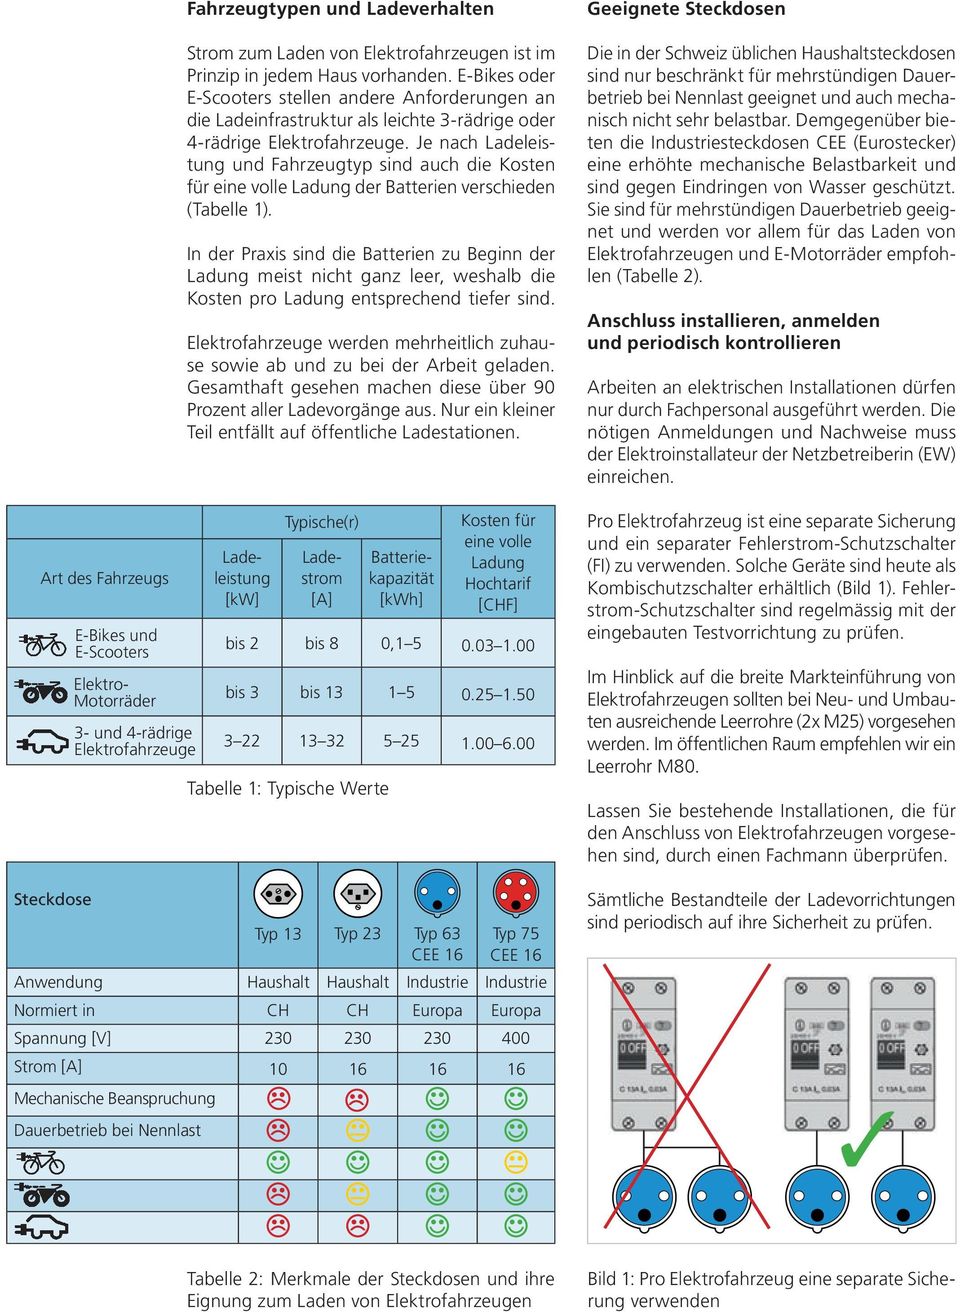 Je nach Ladeleistung und Fahrzeugtyp sind auch die Kosten für eine volle Ladung der Batterien verschieden (Tabelle 1).